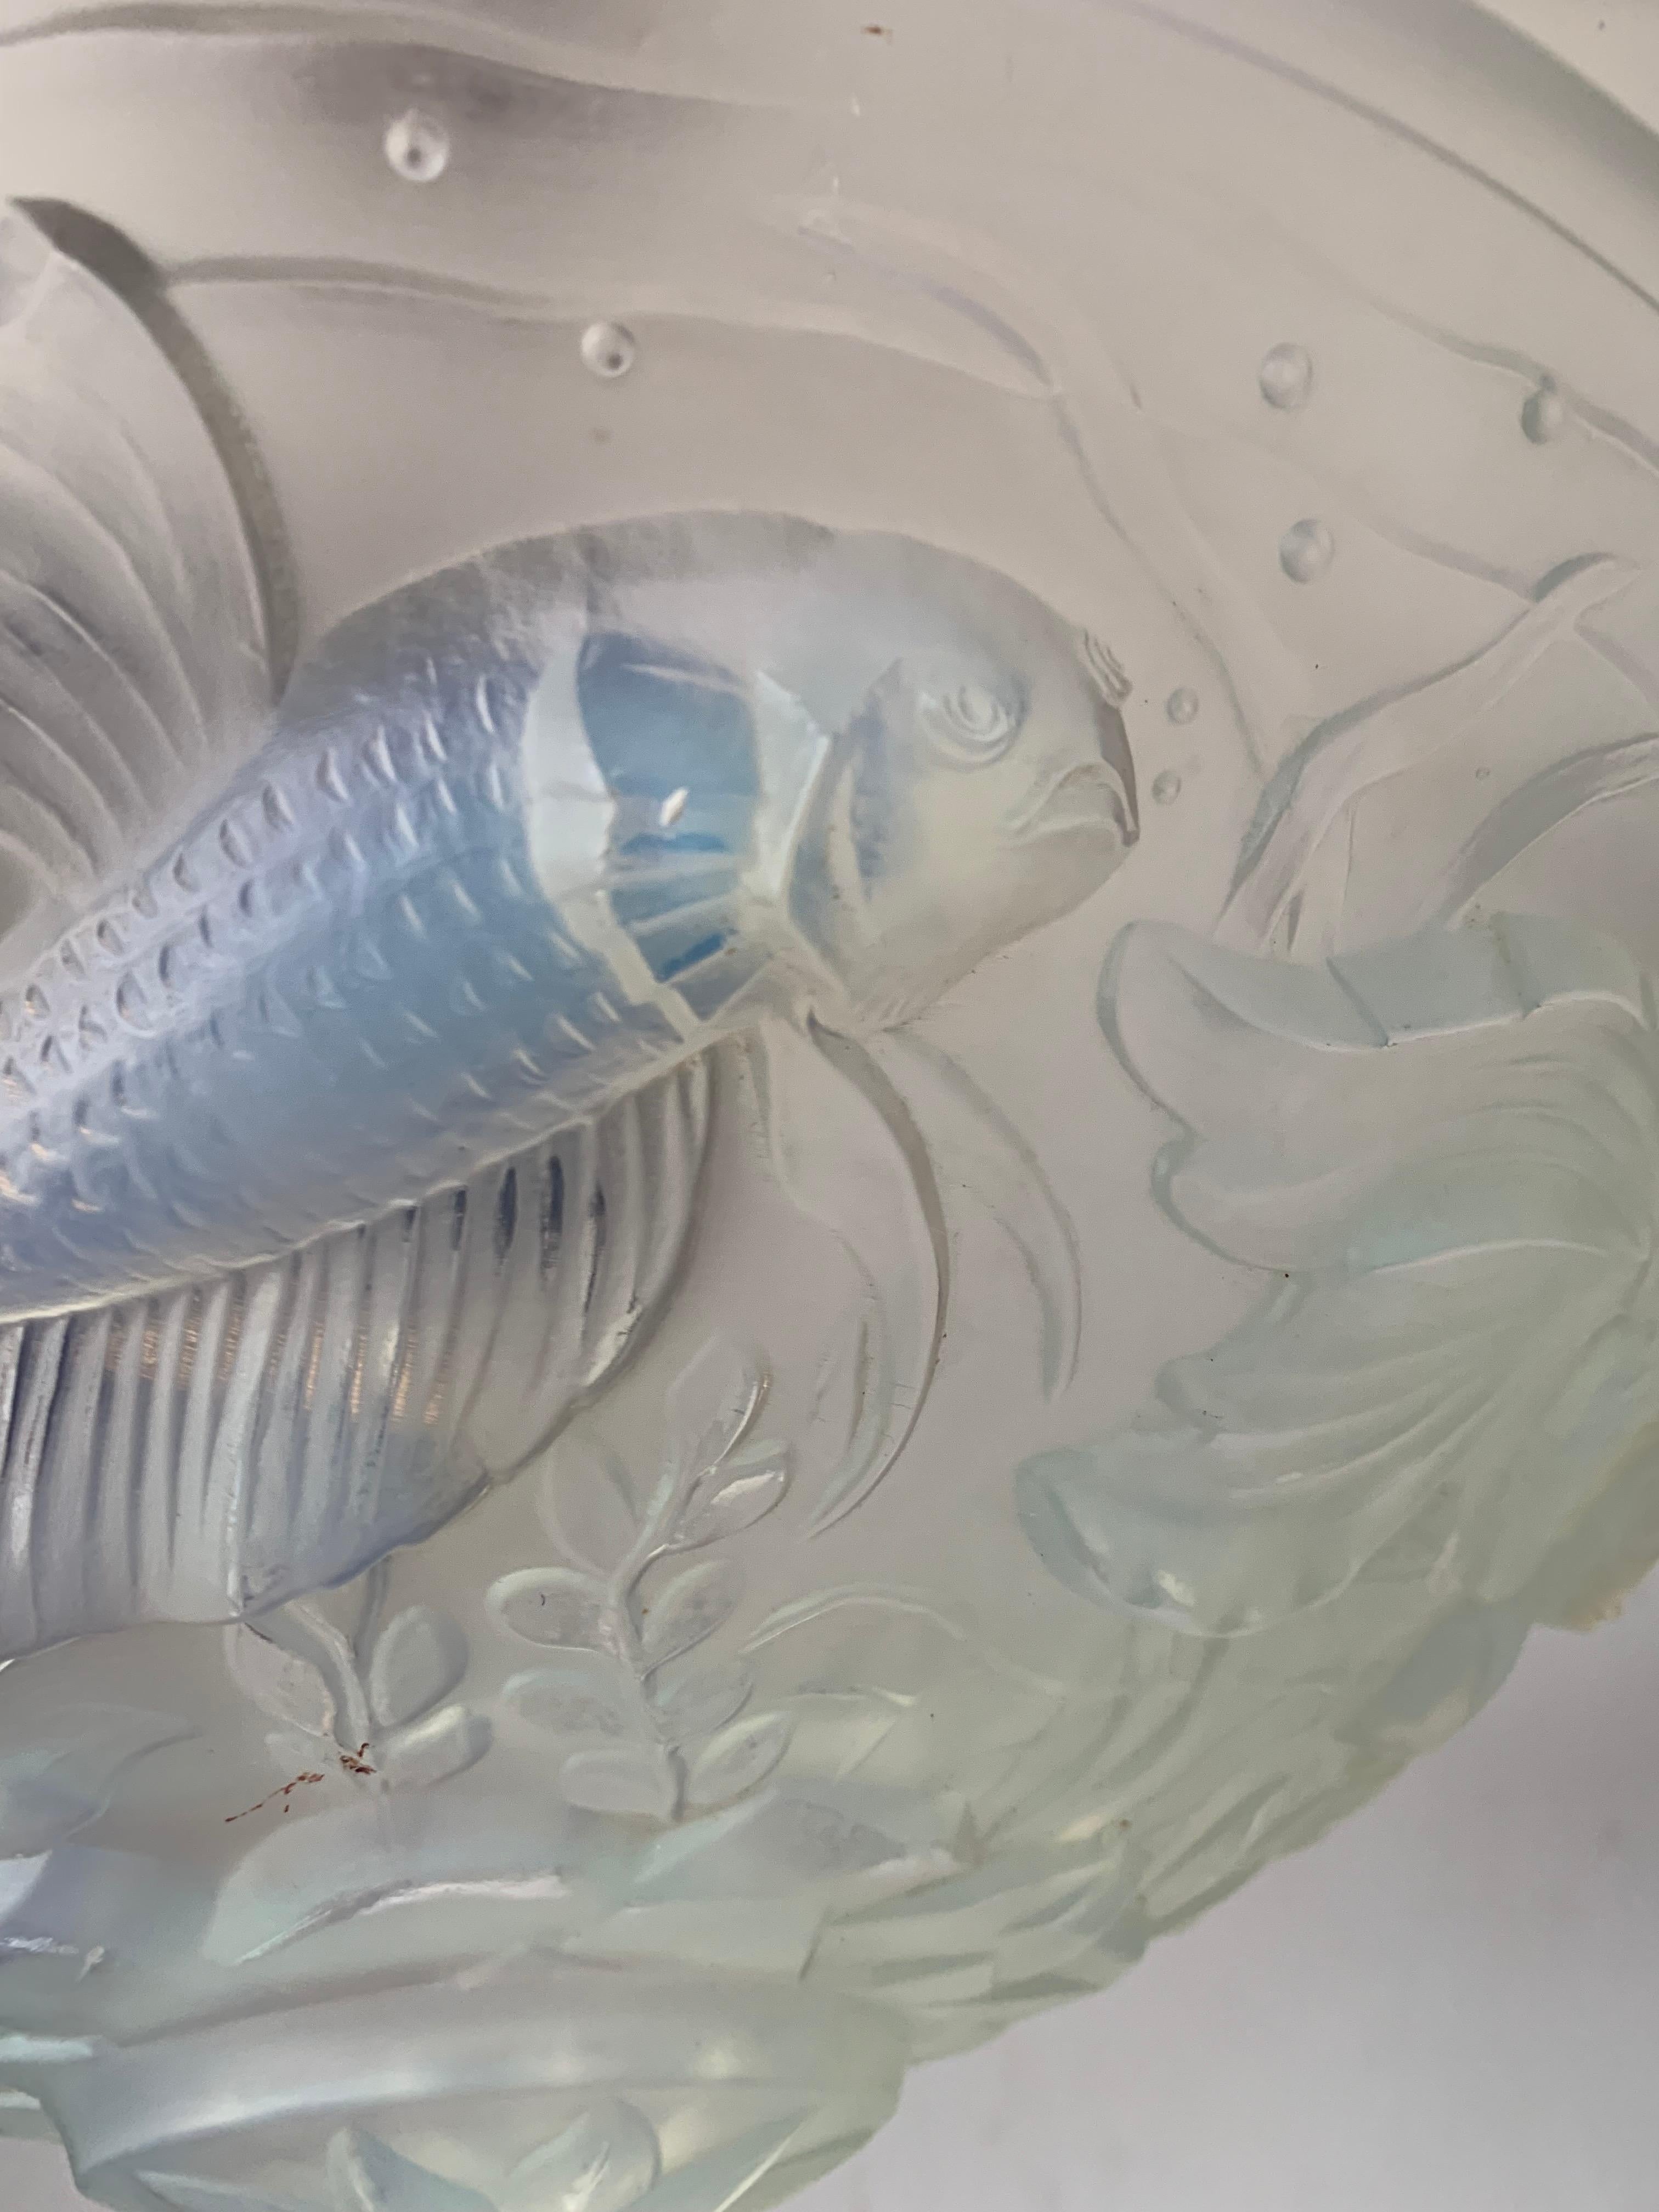 Delightful Art Deco Pendant Light with René Lalique Style Glass Fish Sculptures 2